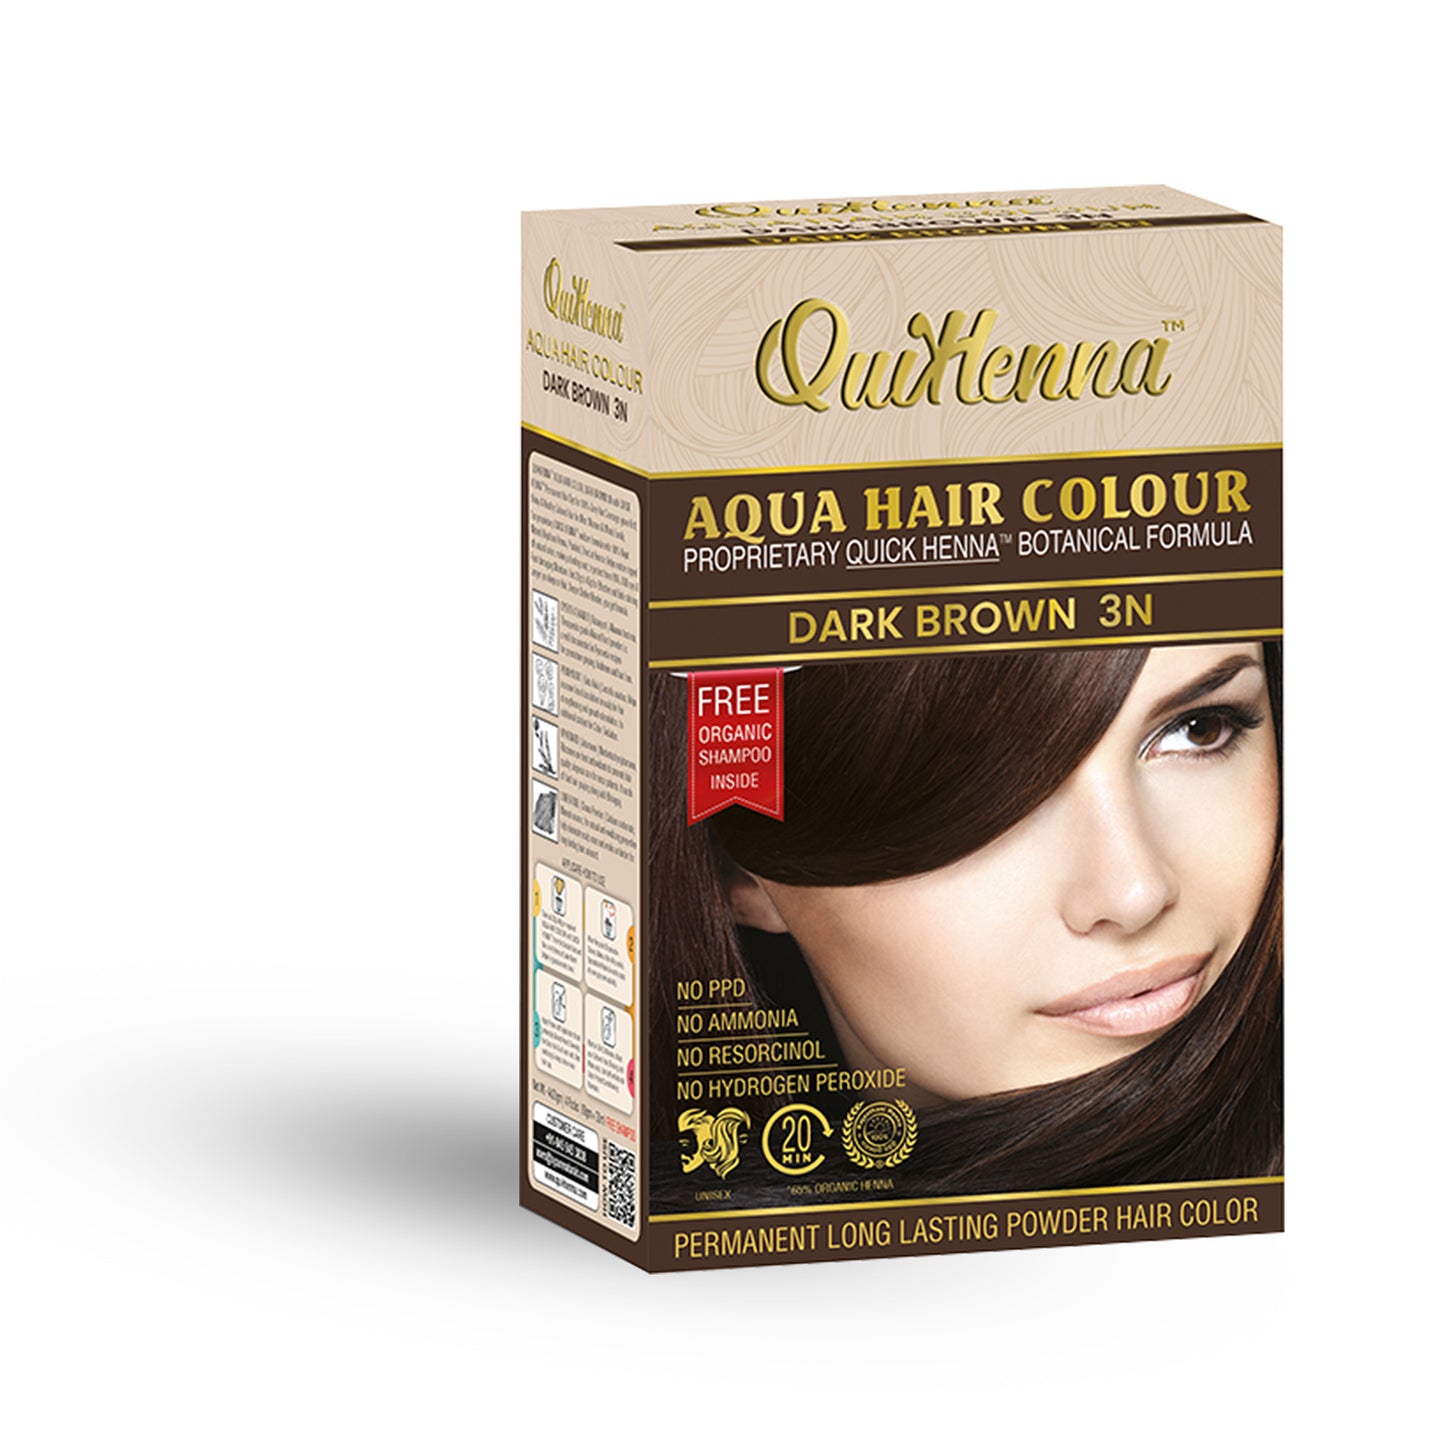 QuikHenna Aqua Safe Powder Hair Colour dark brown